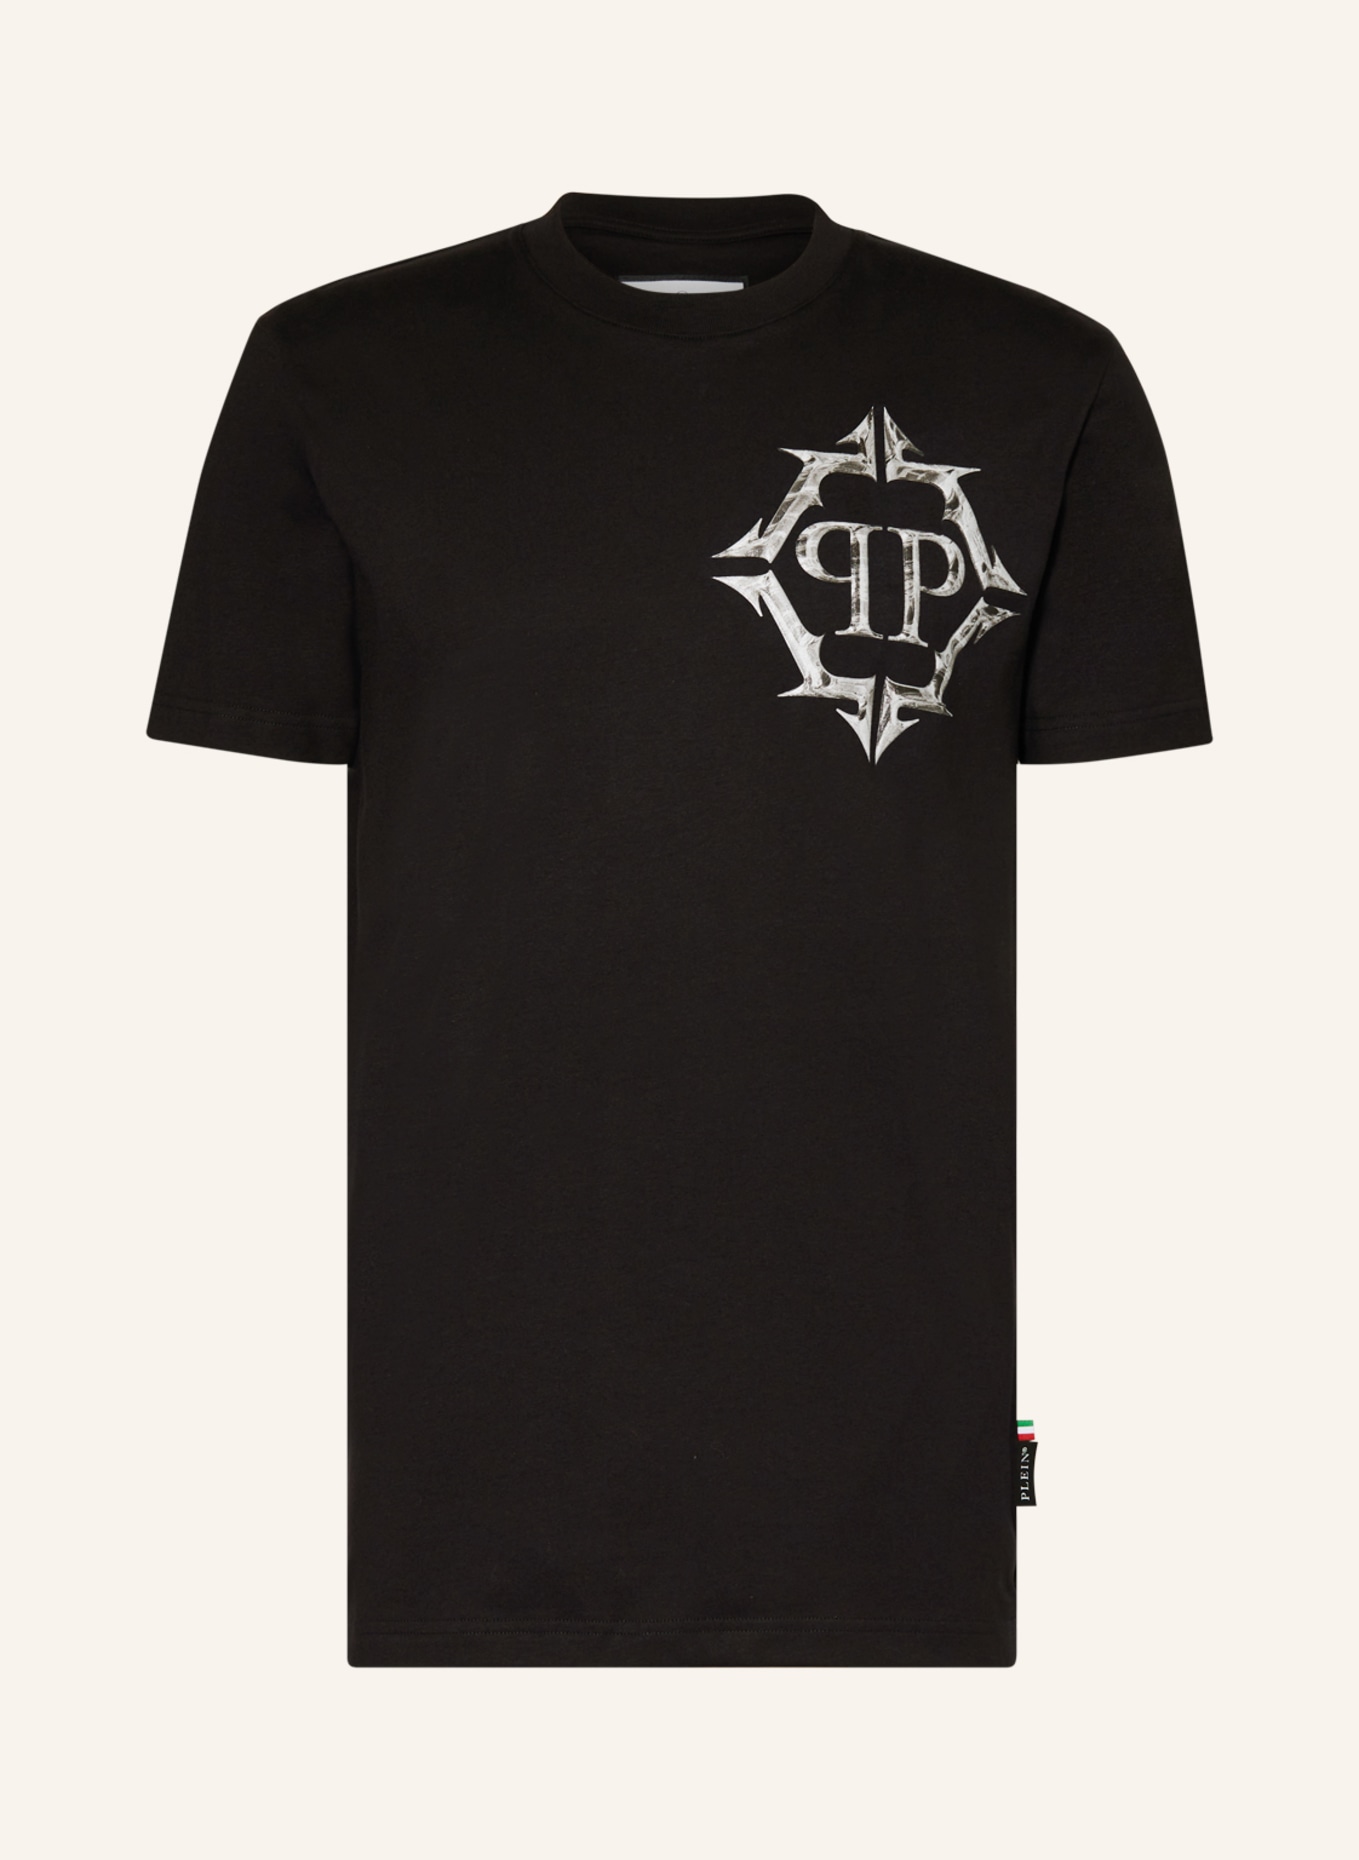 PHILIPP PLEIN T-shirt, Color: BLACK (Image 1)